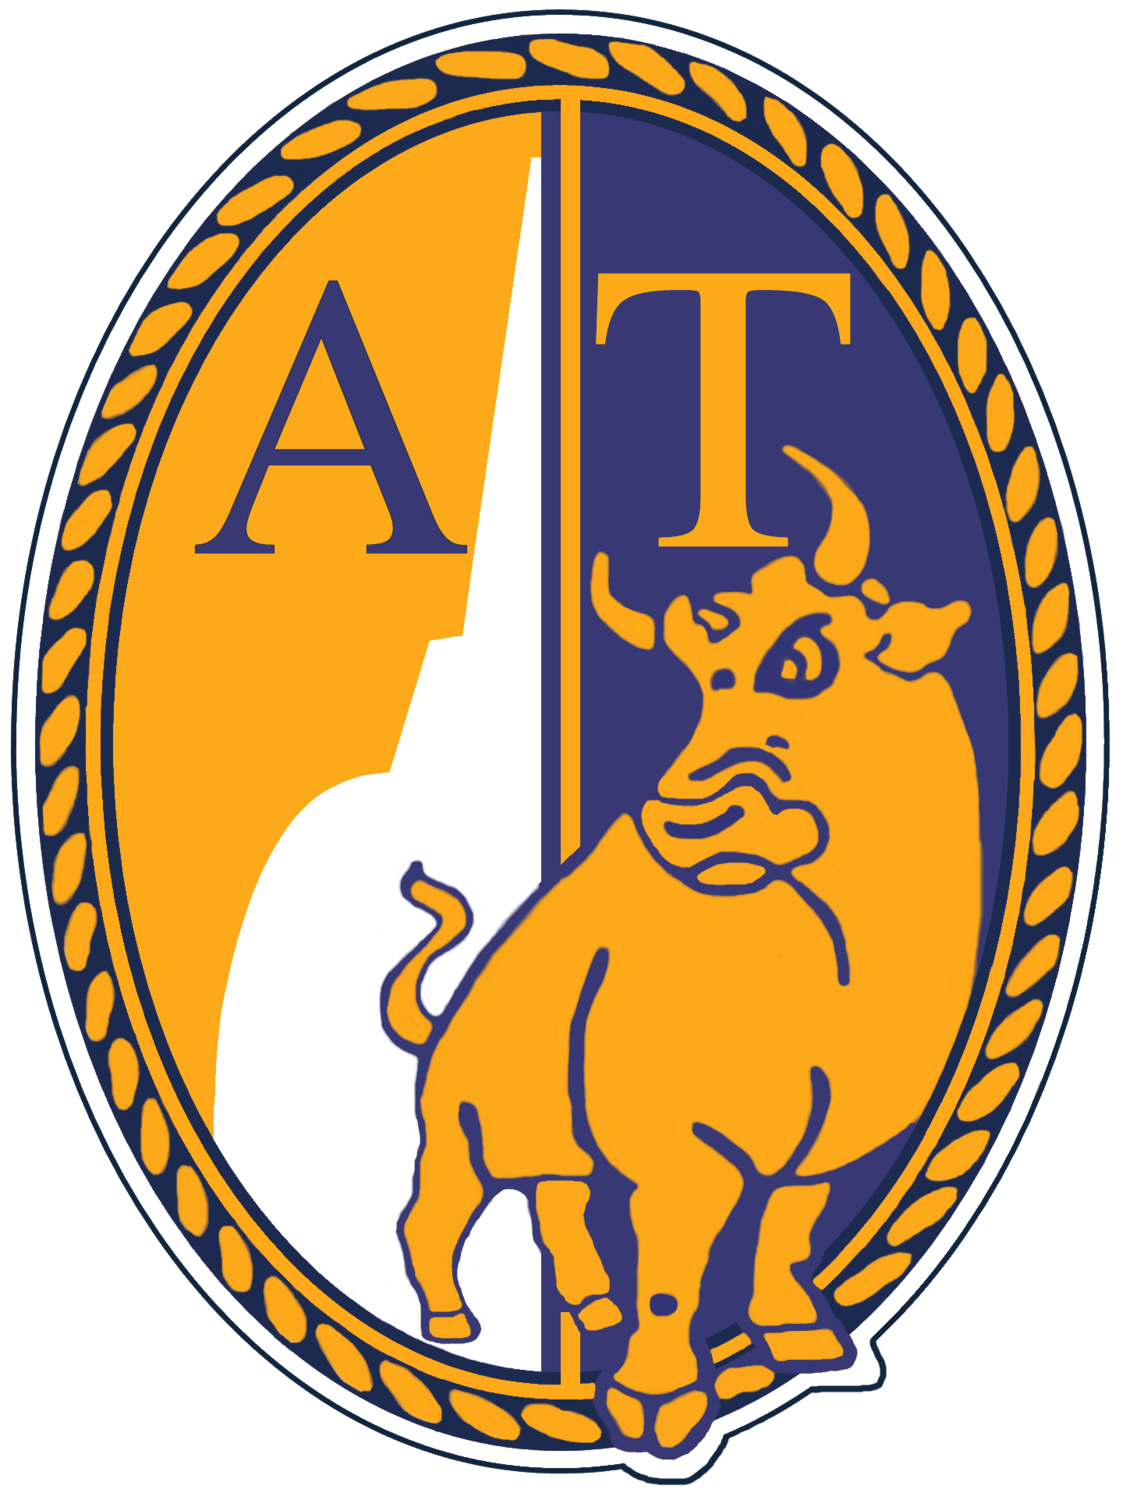 Wappen ASD Atletico Torino  82924